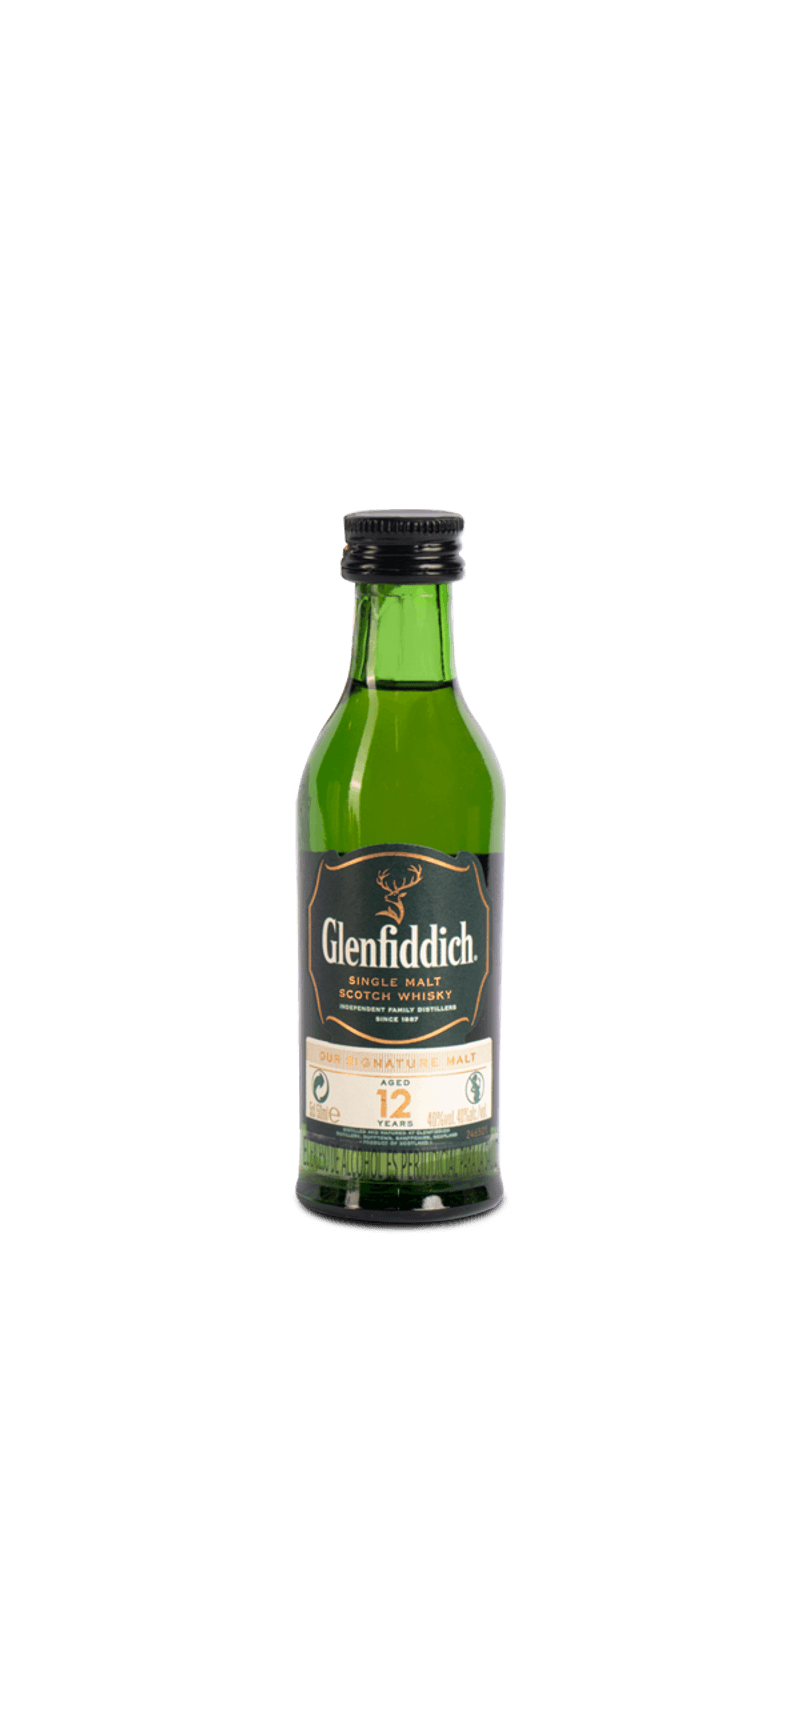 Mini Botella Whisky Glenfiddich 15 años más caja de regalo